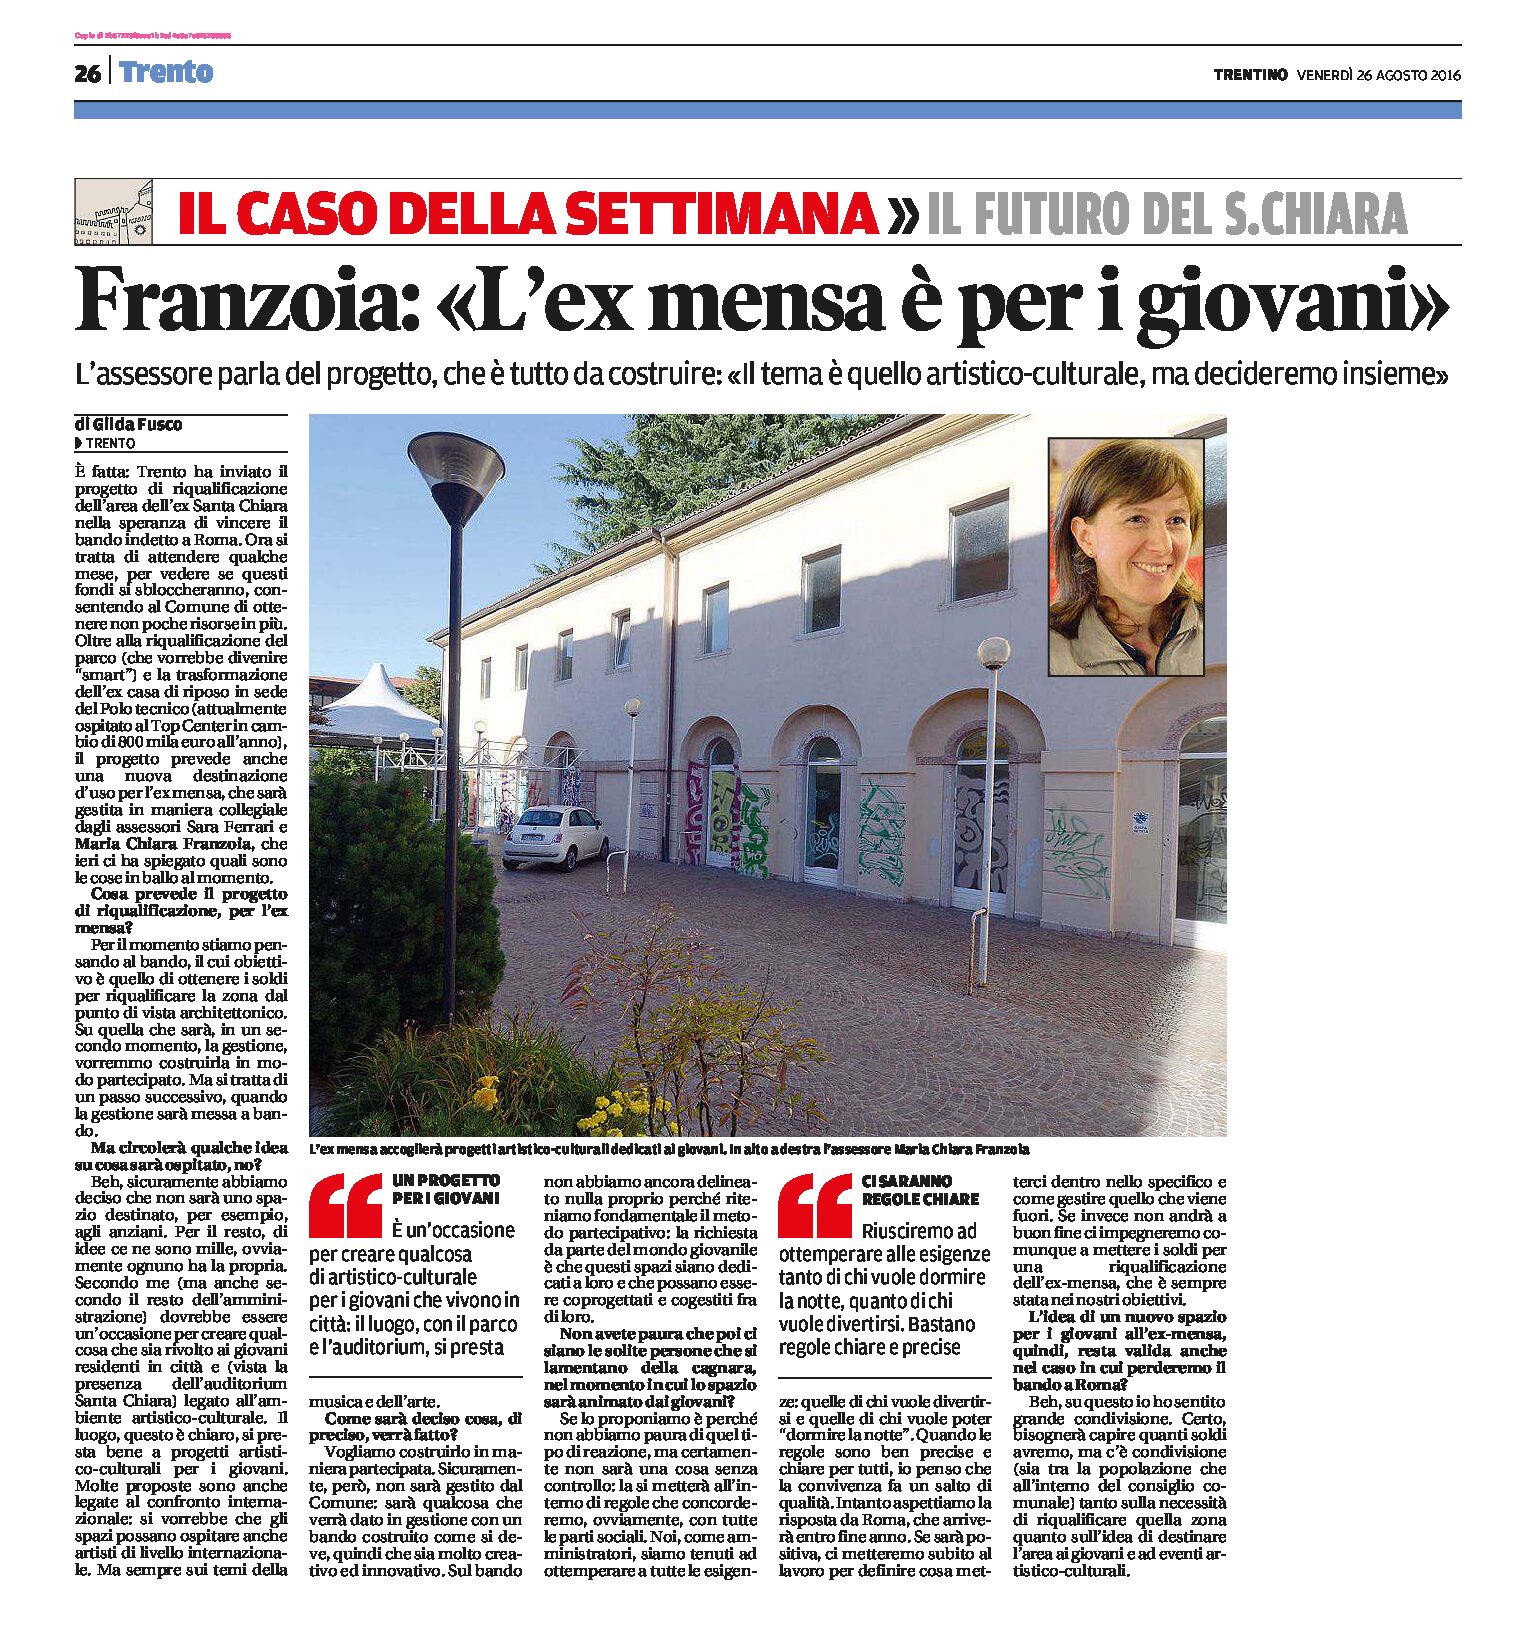 Trento, ex mensa: Franzoia “è per i giovani”